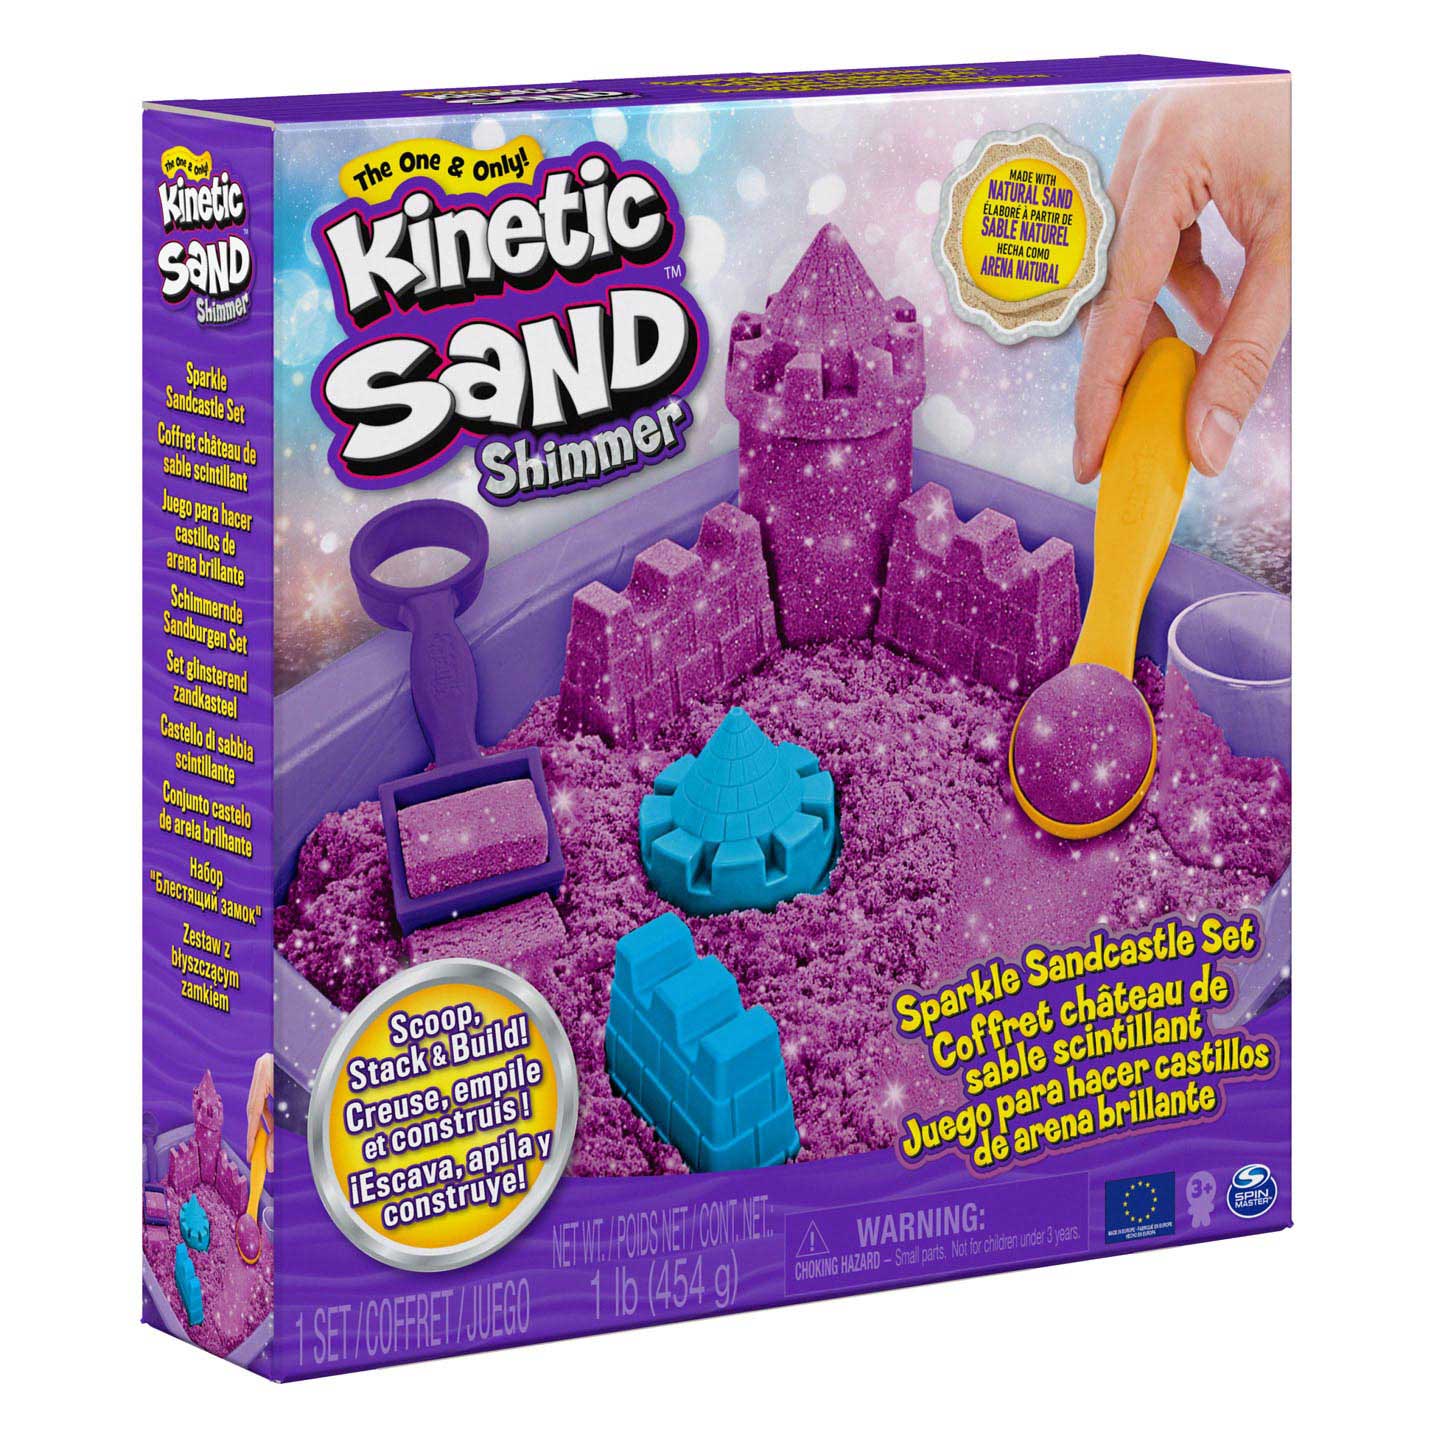 Kinetic Sand - Shimmer Sand Castle Set Lila, 453gr.